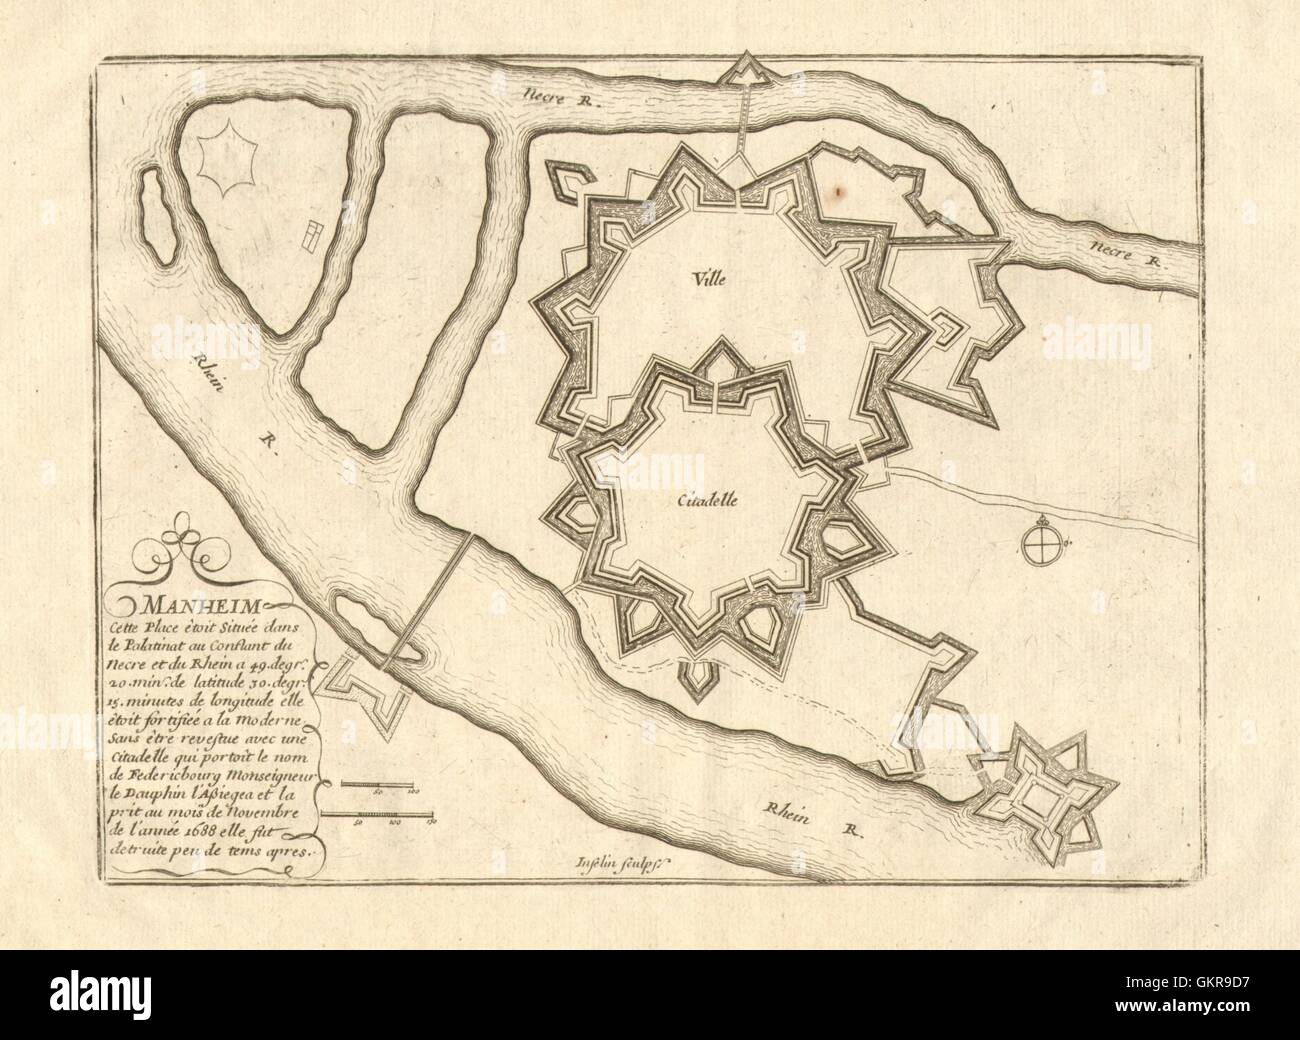 'Manheim'. Mannheim fortified town/city plan. Baden-Württemberg. DE FER 1705 map Stock Photo